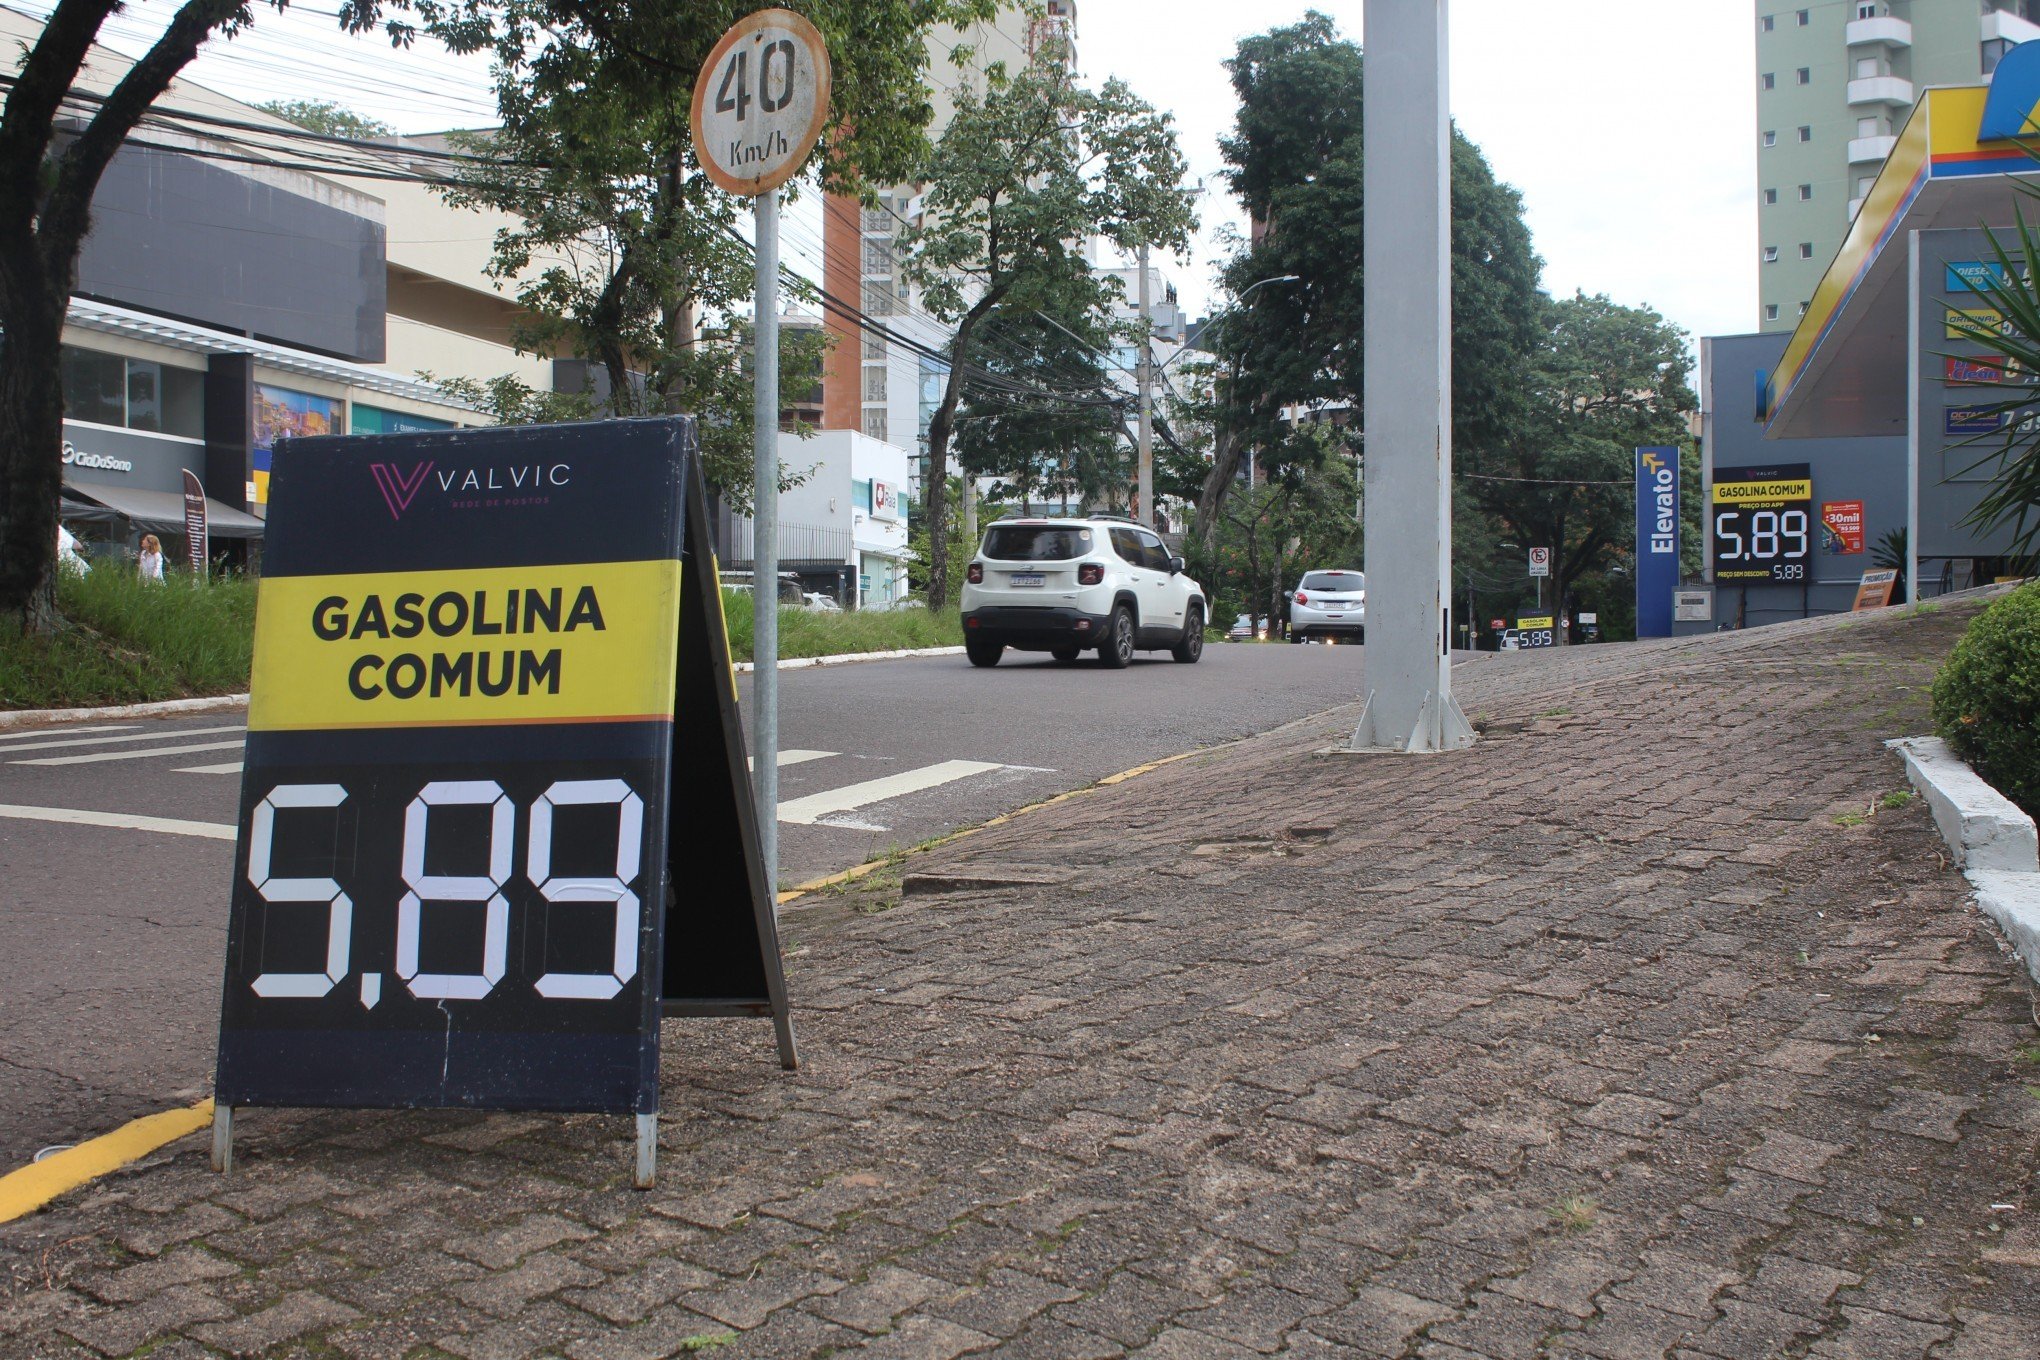 Aumento repentino no preço da gasolina assusta motoristas na região